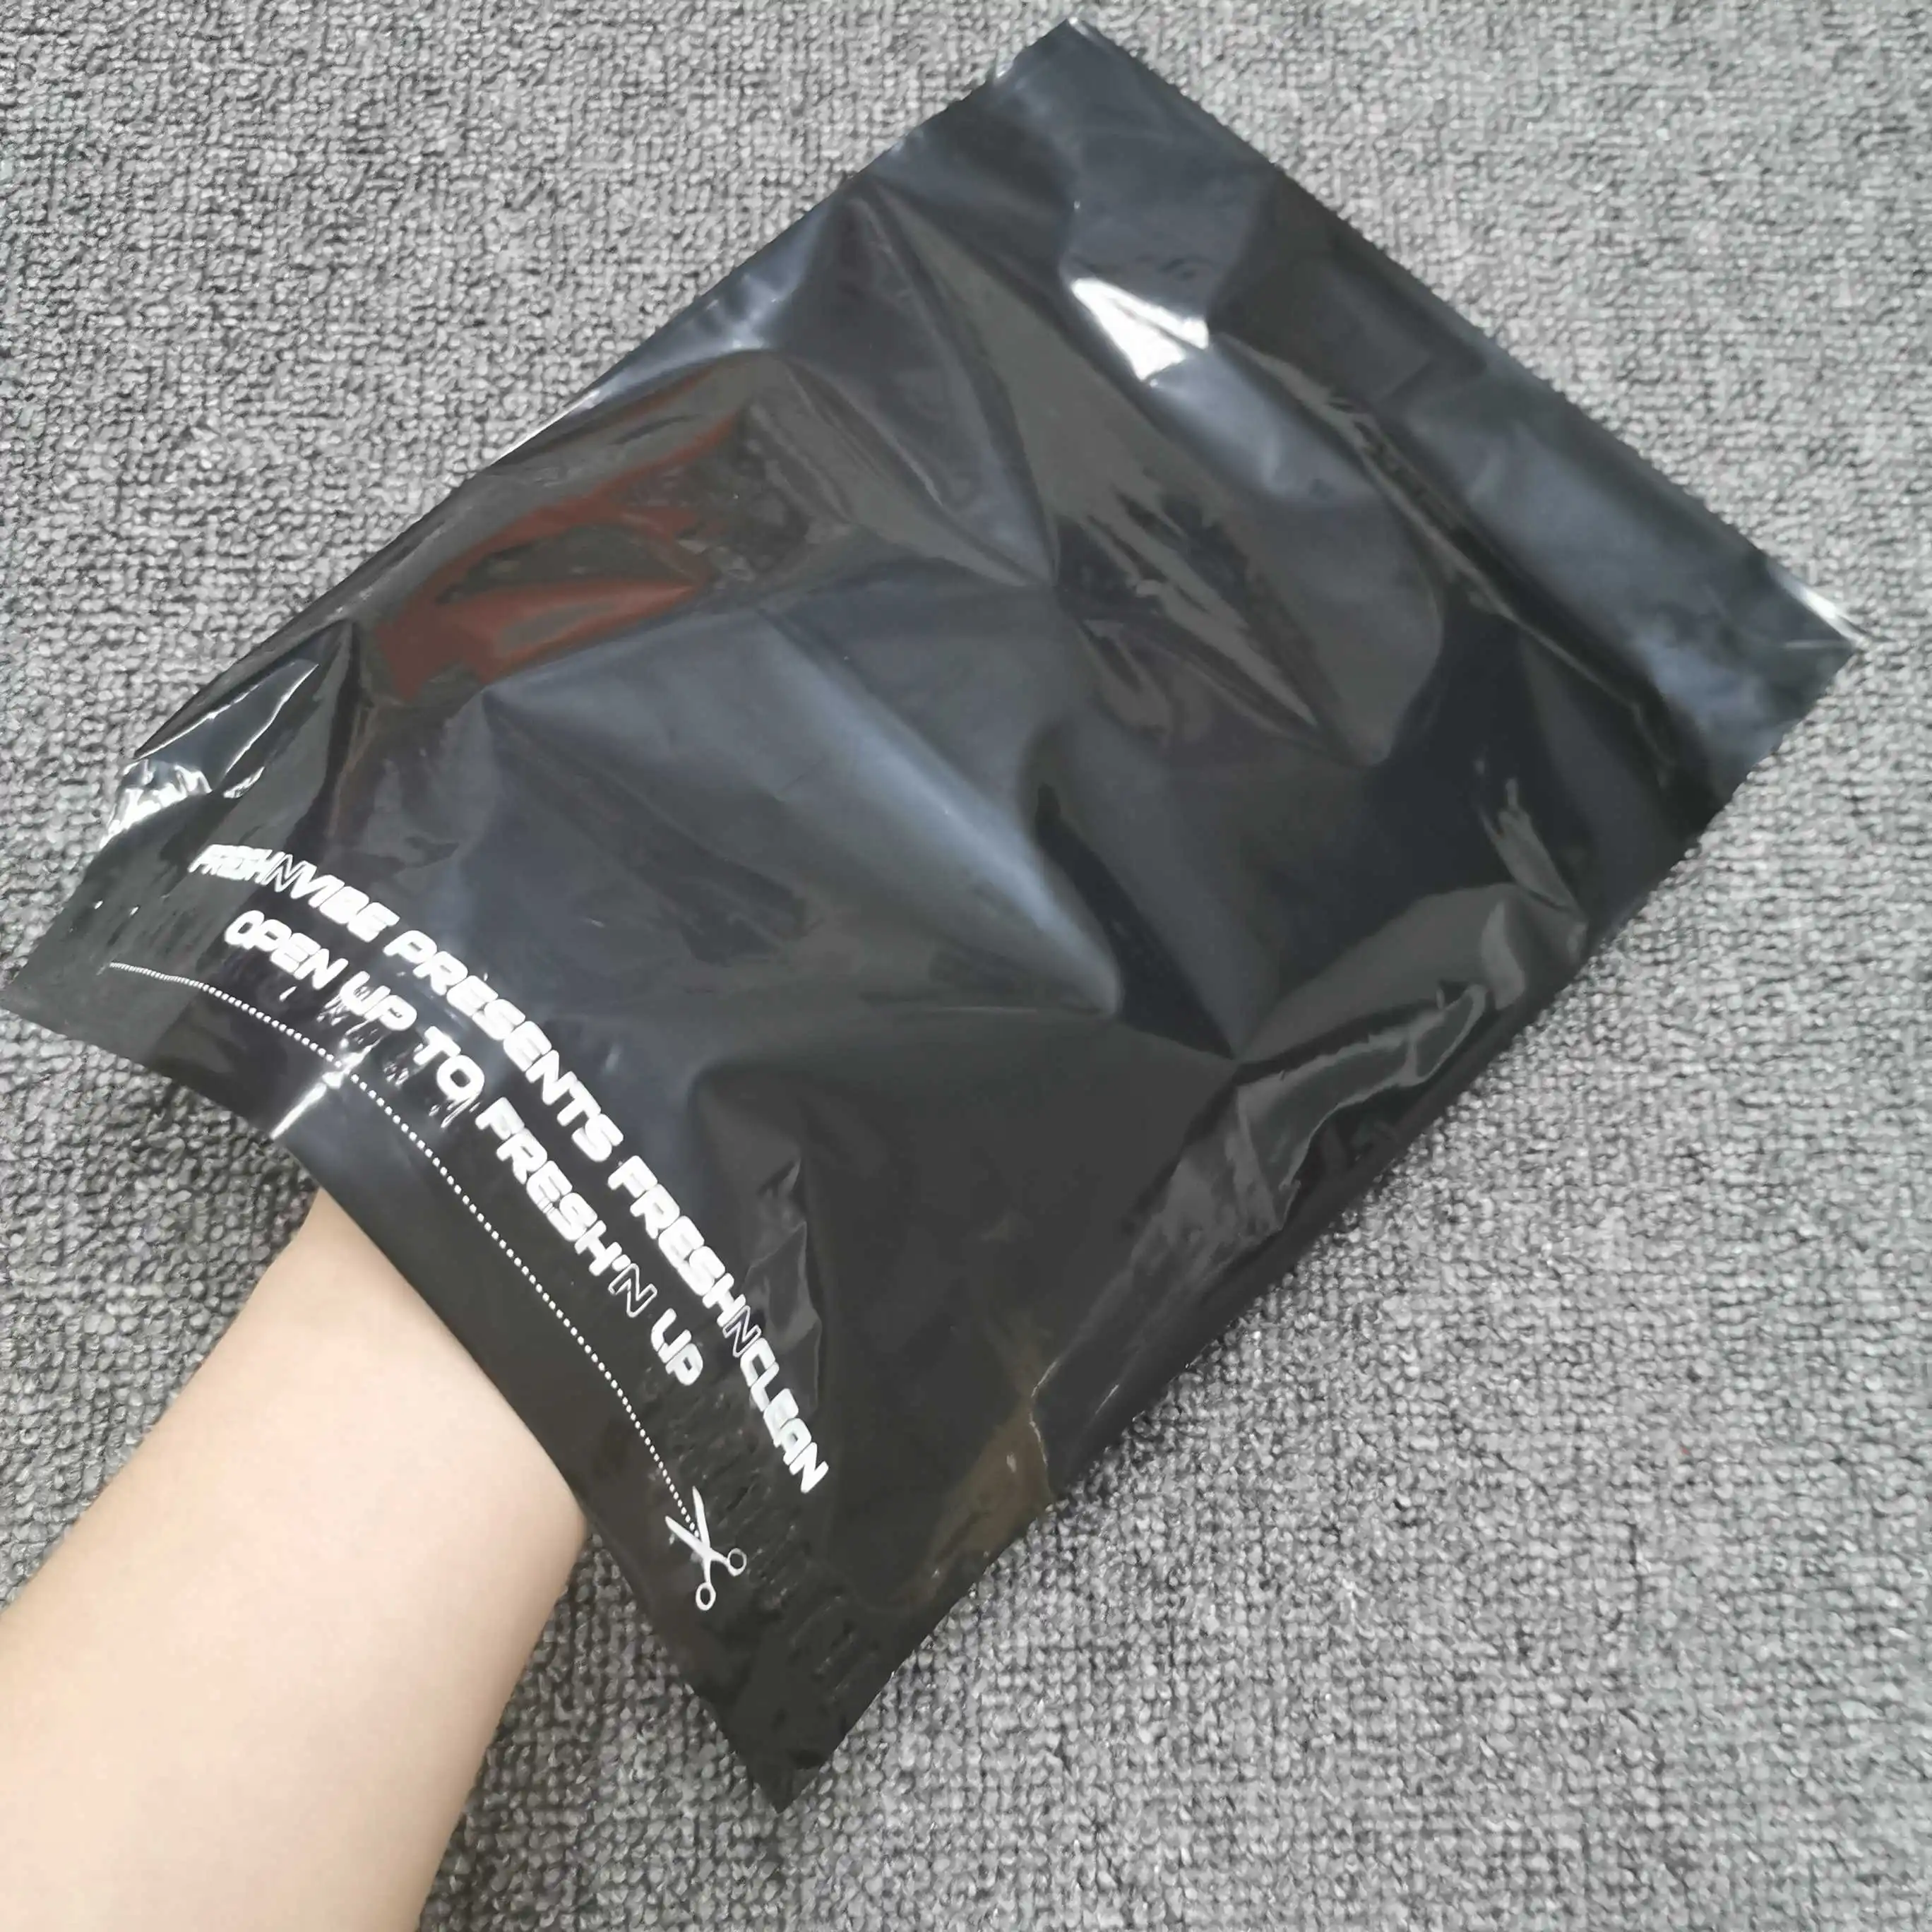 Personalizzato stampato poly corriere mailing sacchetto di plastica colorata mailer buste borse di trasporto per i vestiti